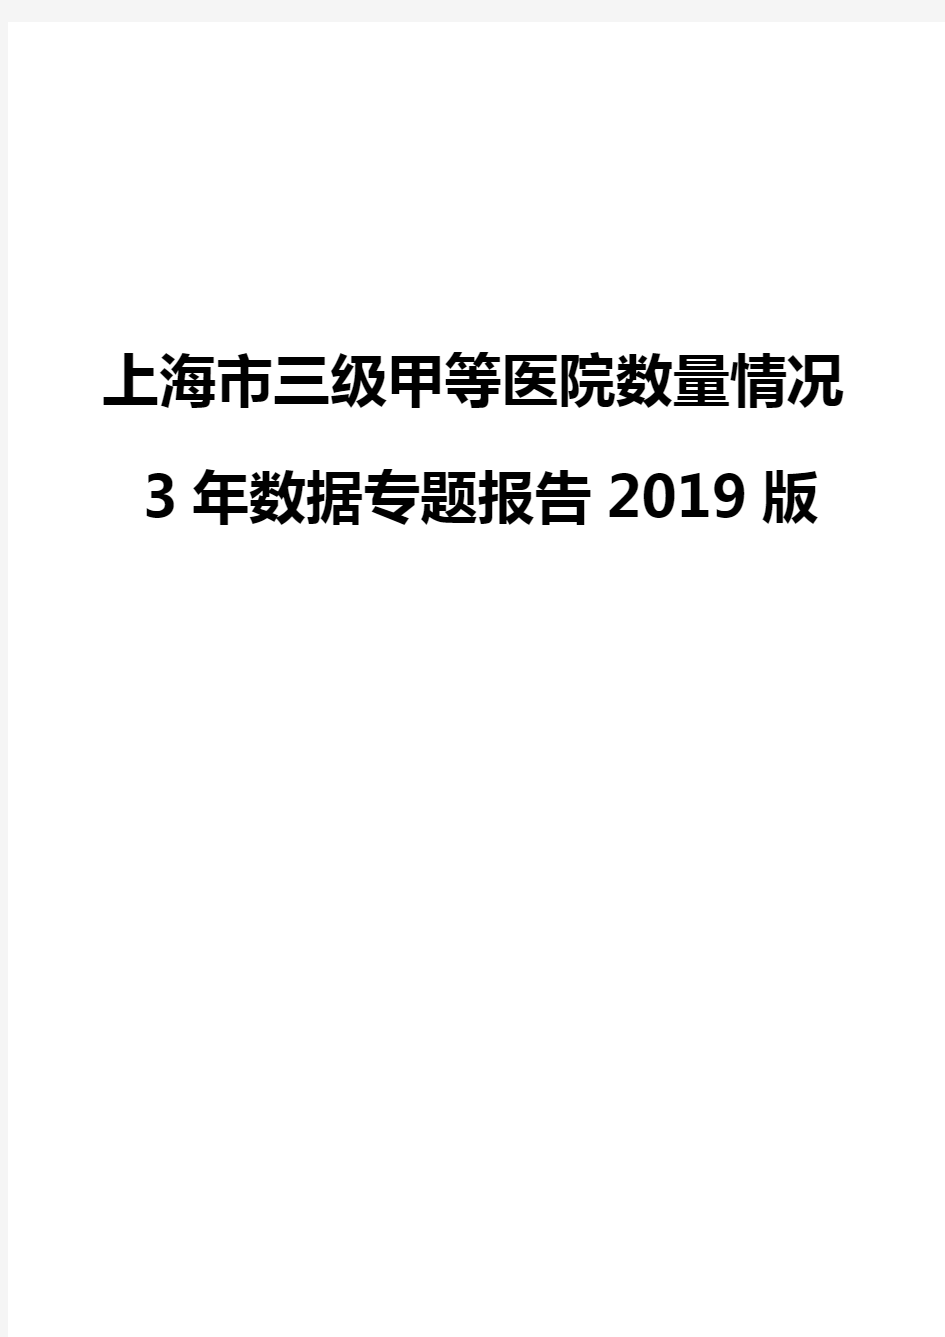 上海市三级甲等医院数量情况3年数据专题报告2019版